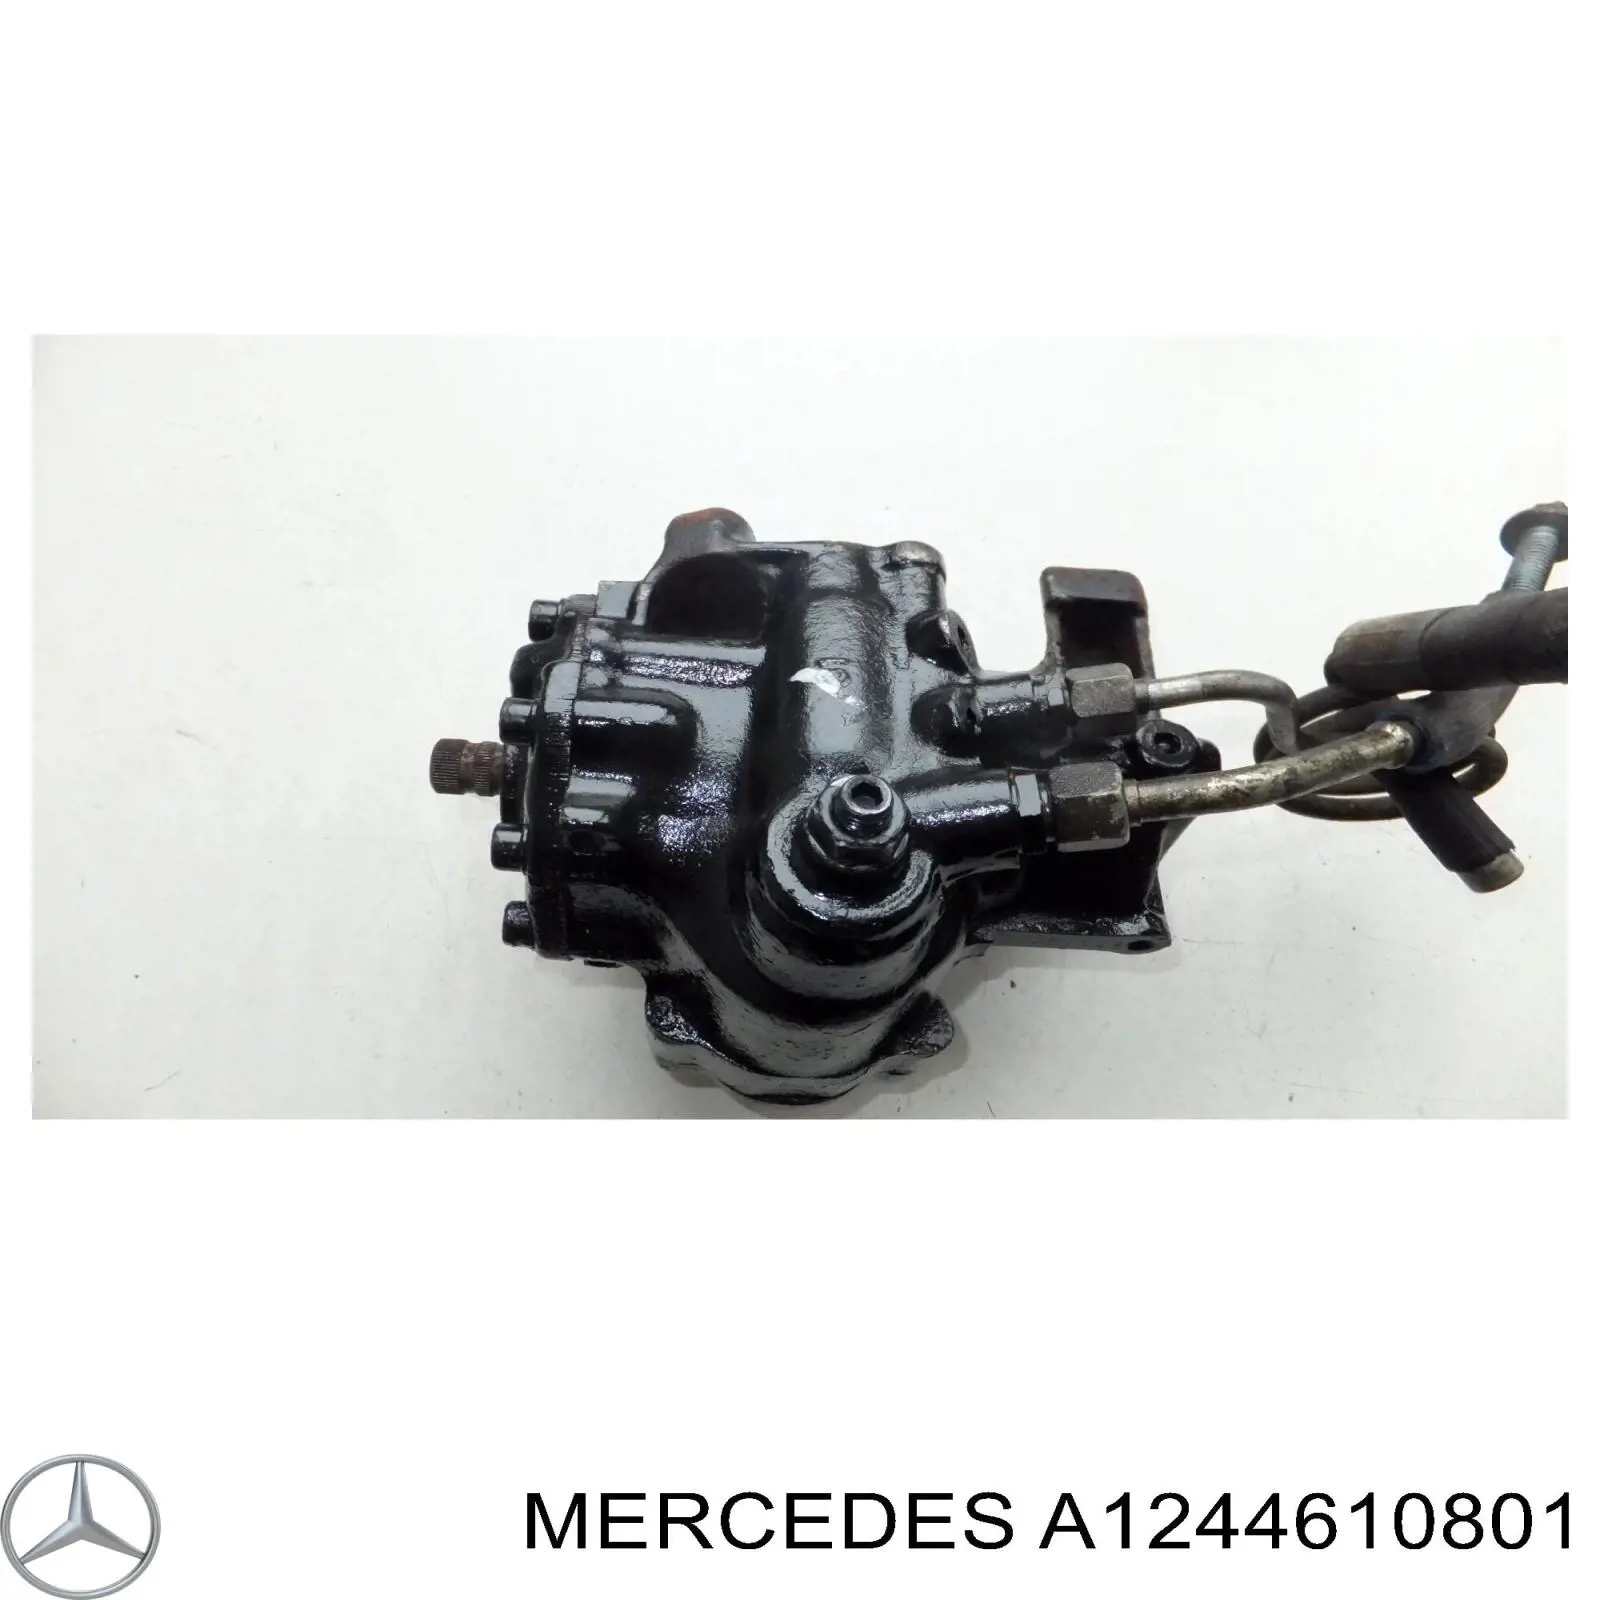 A1244610801 Mercedes механизм рулевой (редуктор)